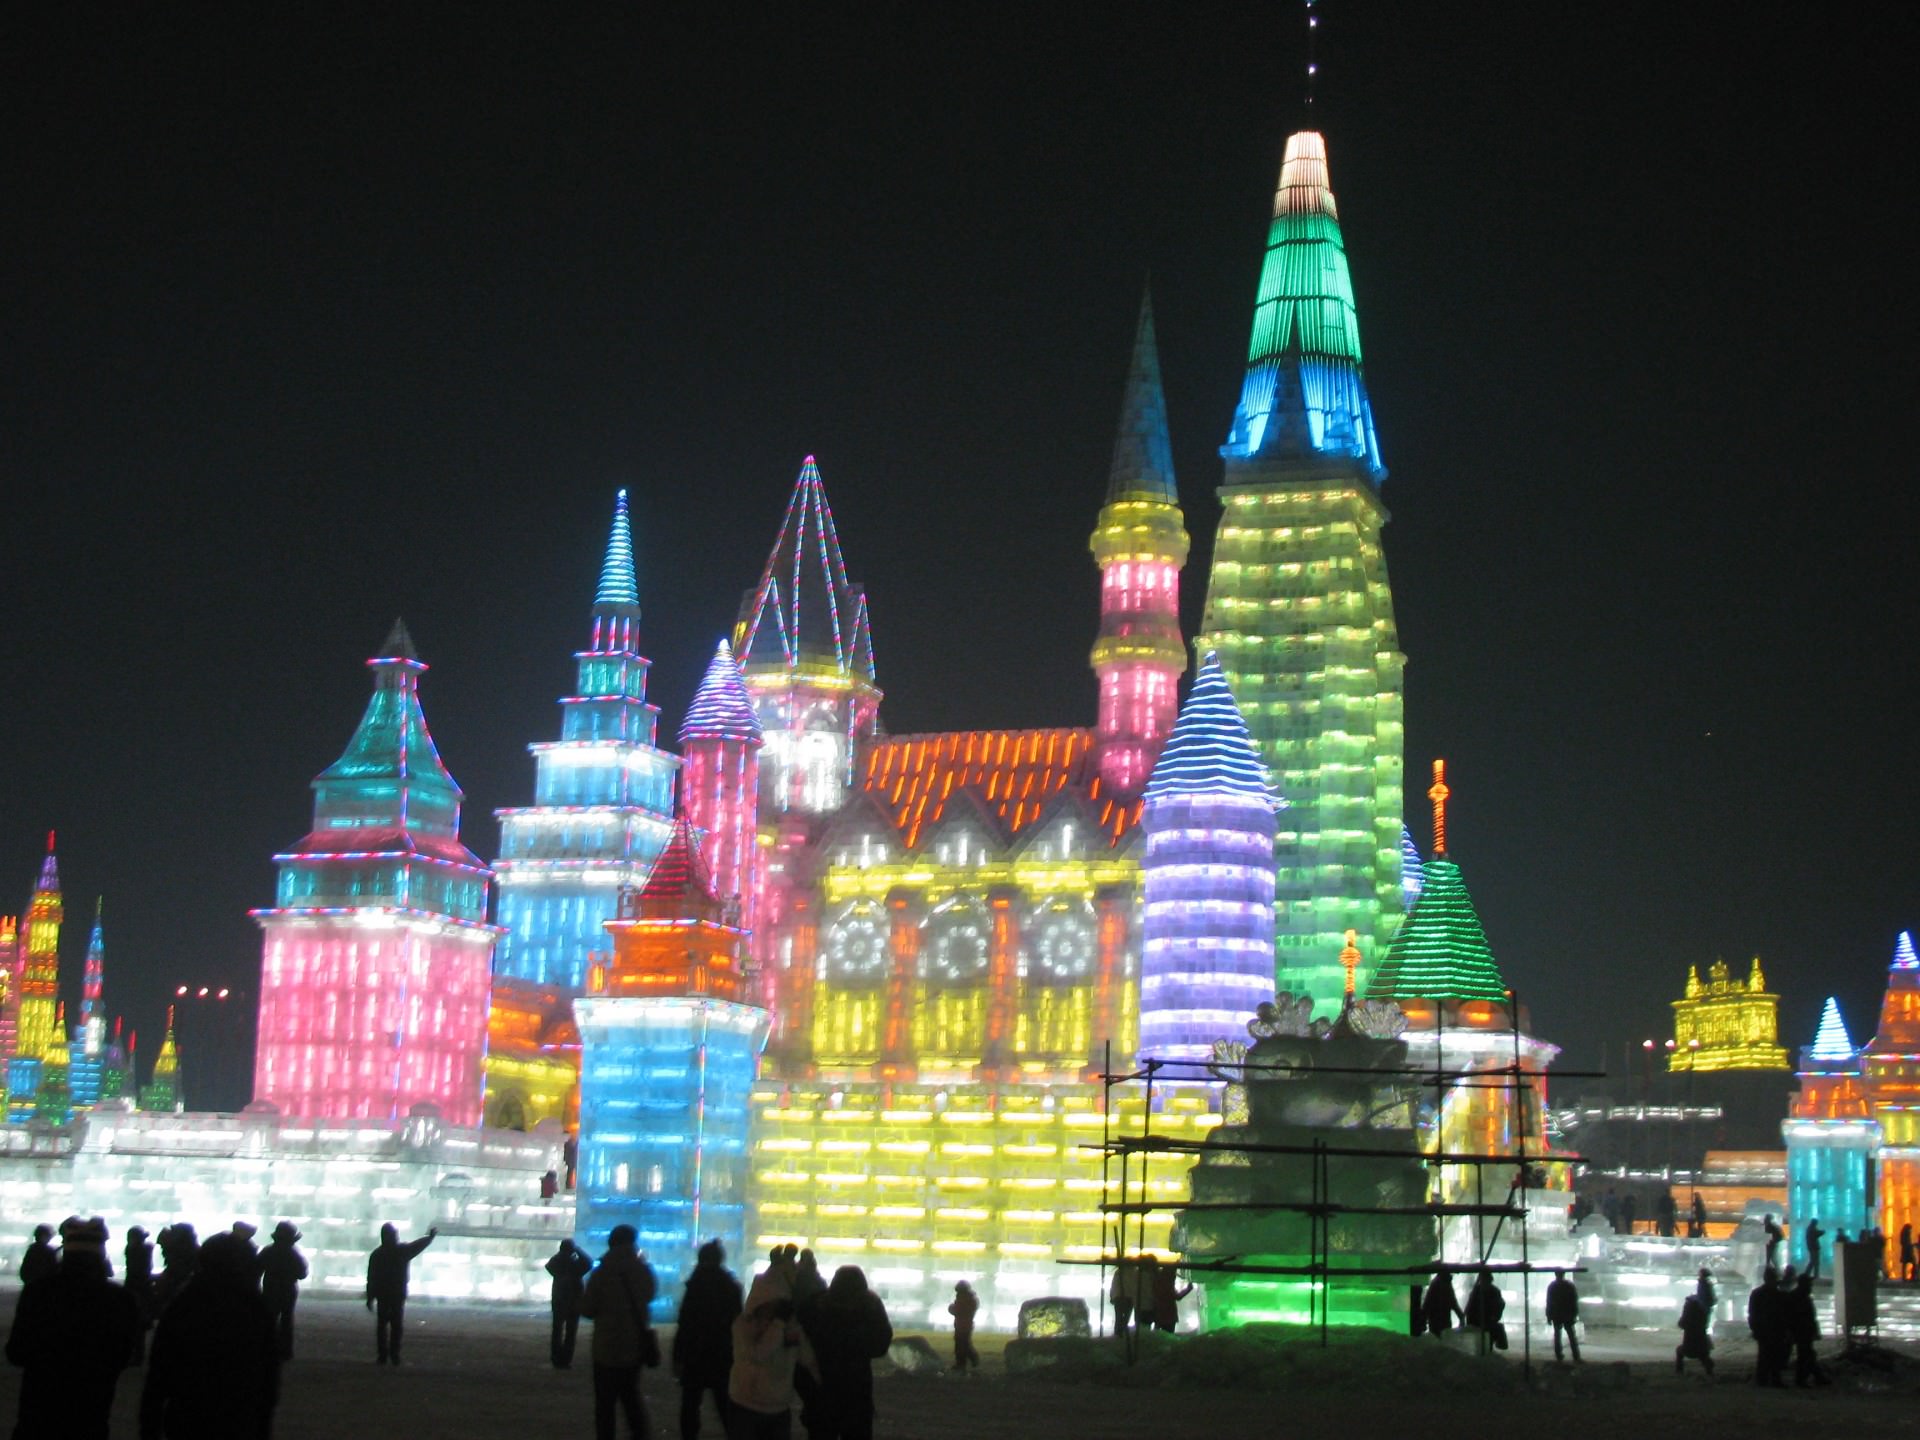 מבני הקרח בפסטיבל מוארים בלילה בשלל אורות צבעוניים (צילום: ג. א.)